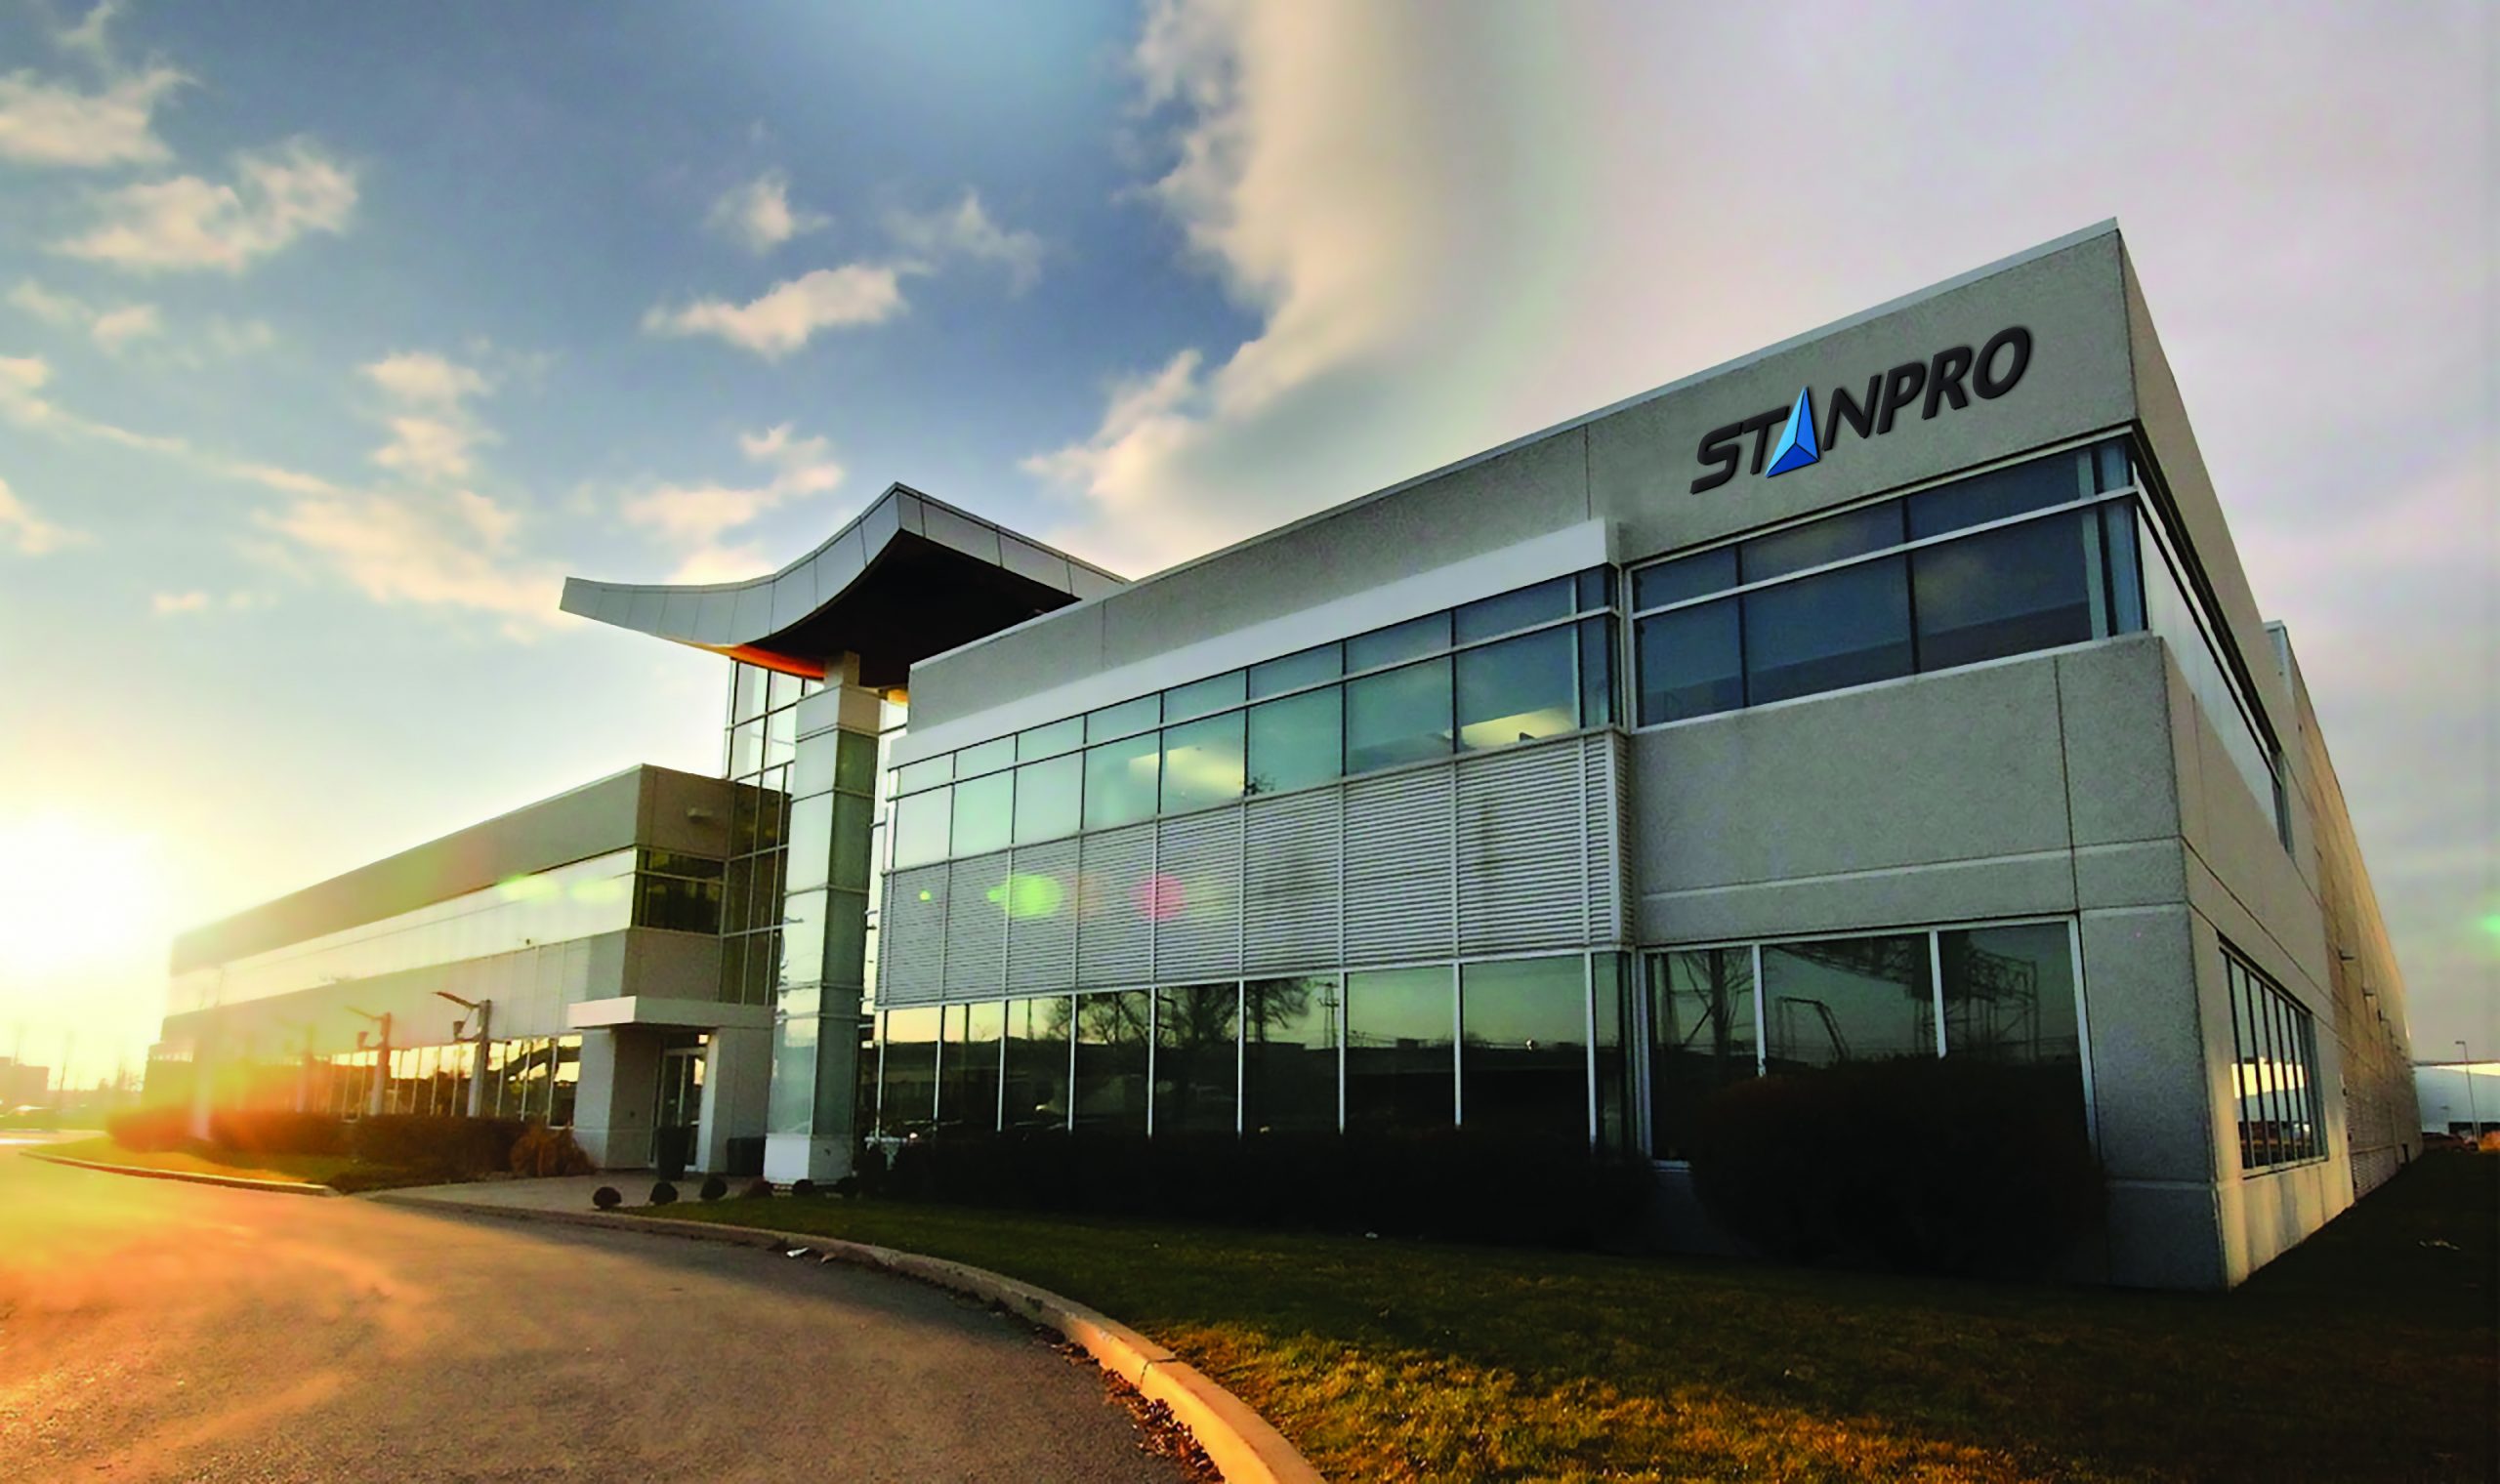 斯坦普加拿大照明公司办公楼位于蒙特利尔，魁北克